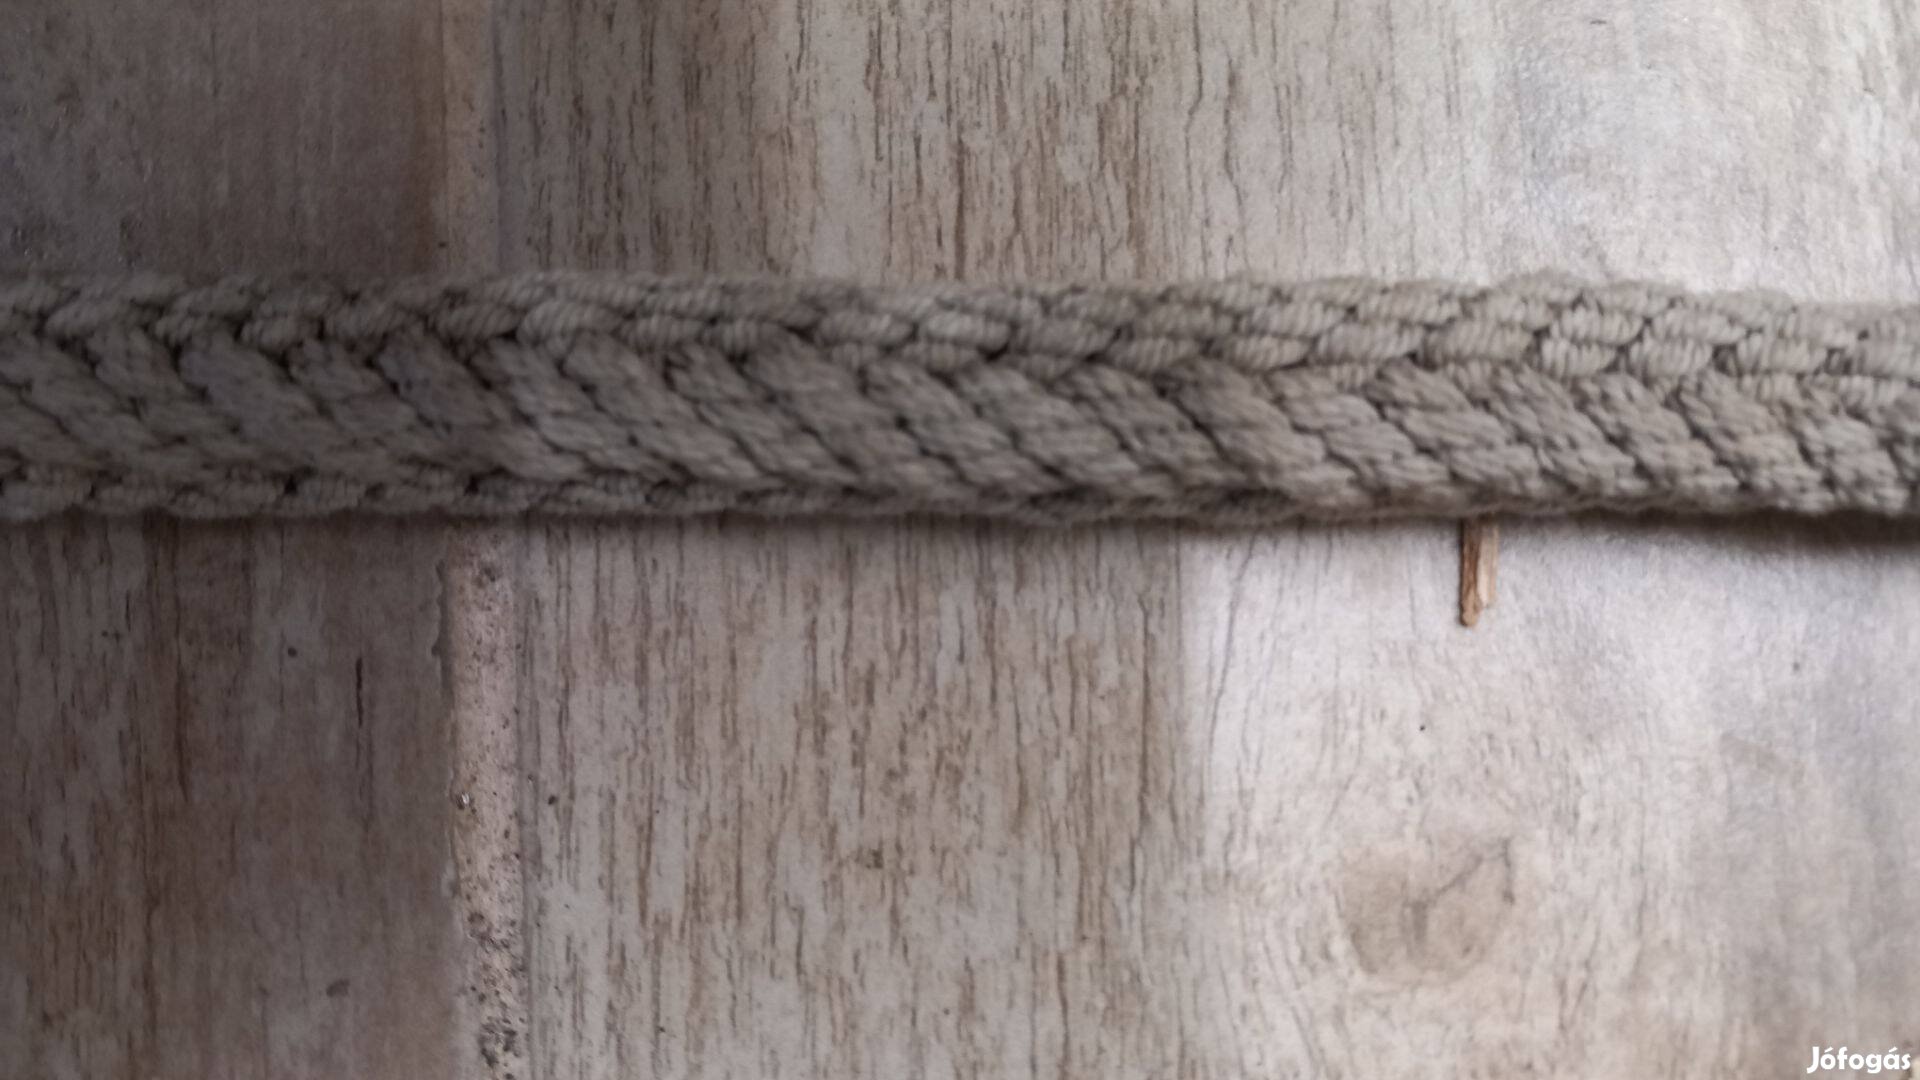 Eladó fonott kötél